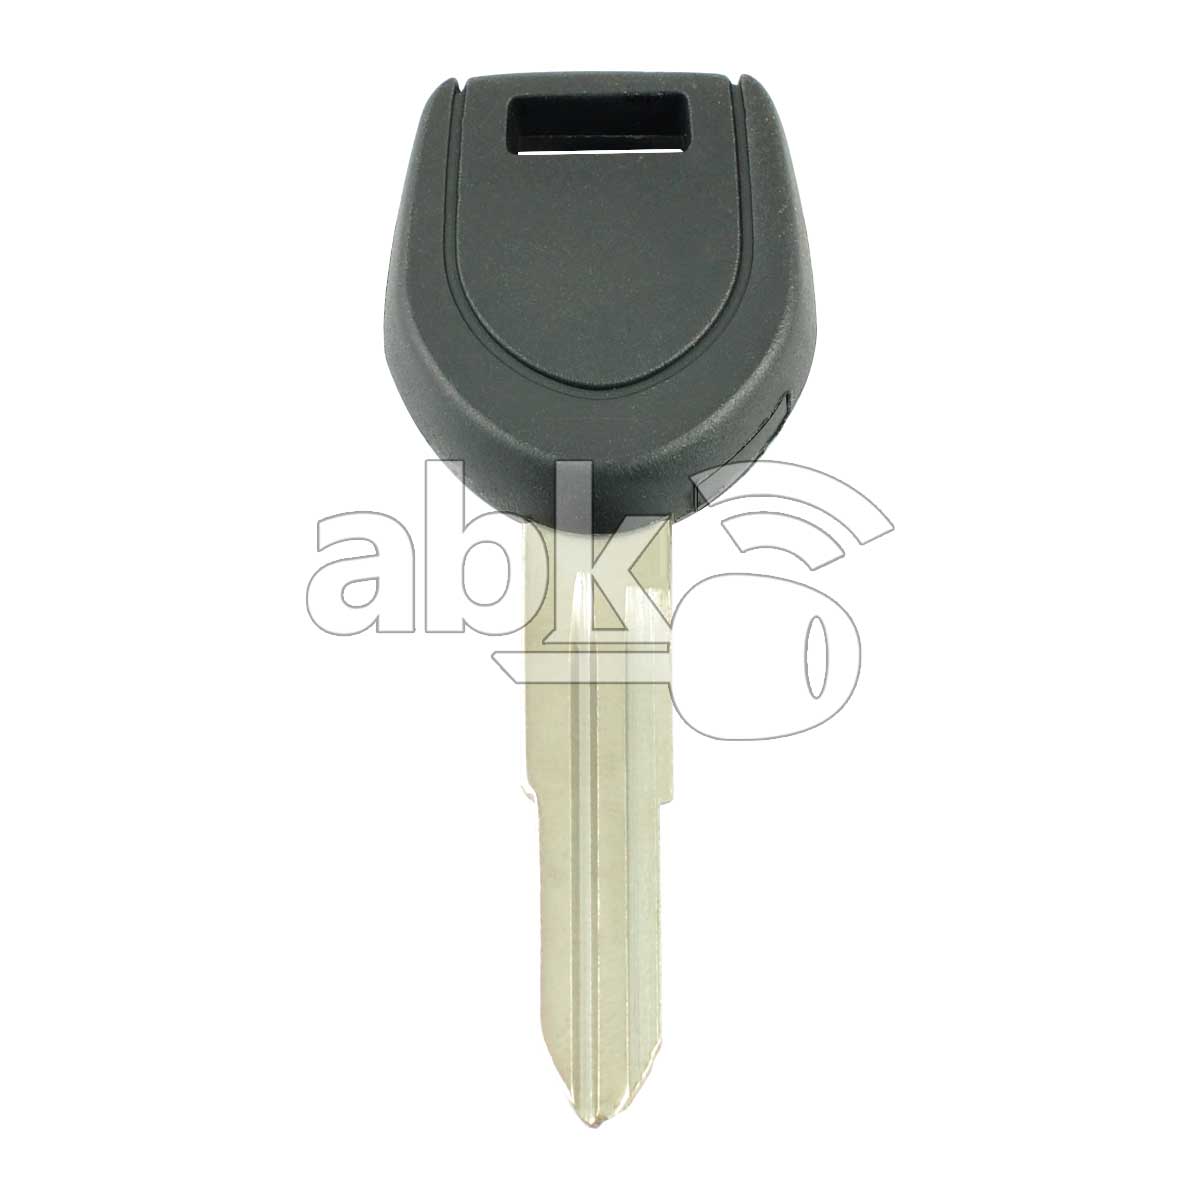 Mitsubishi Transponder Key 4D-61 MIT8 - ABK-468 - ABKEYS.COM